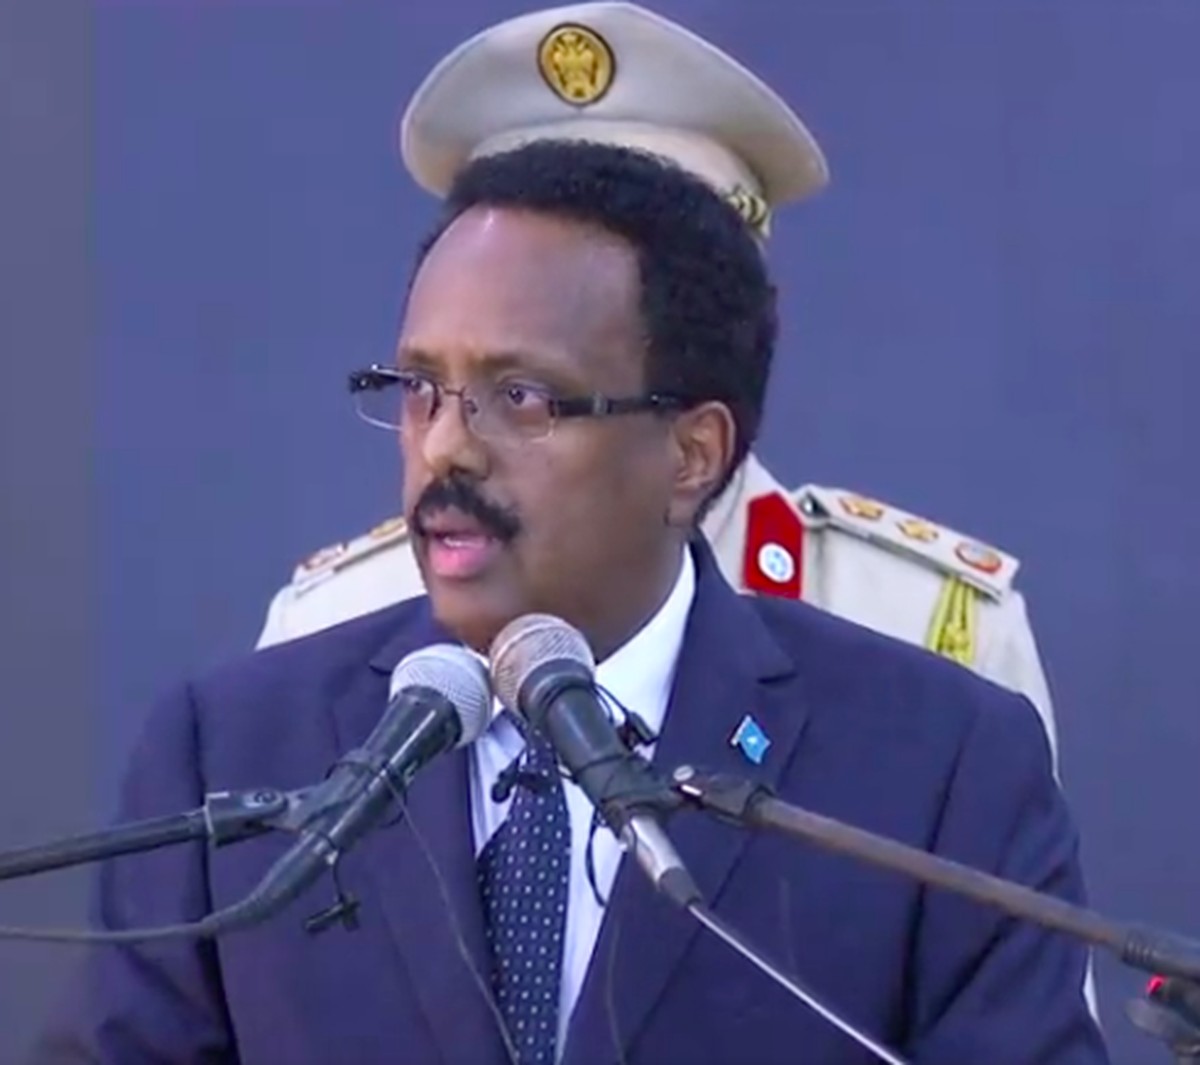 Presidente da Somália suspende premiê, que acusa tentativa de golpe | Mundo  | Valor Econômico